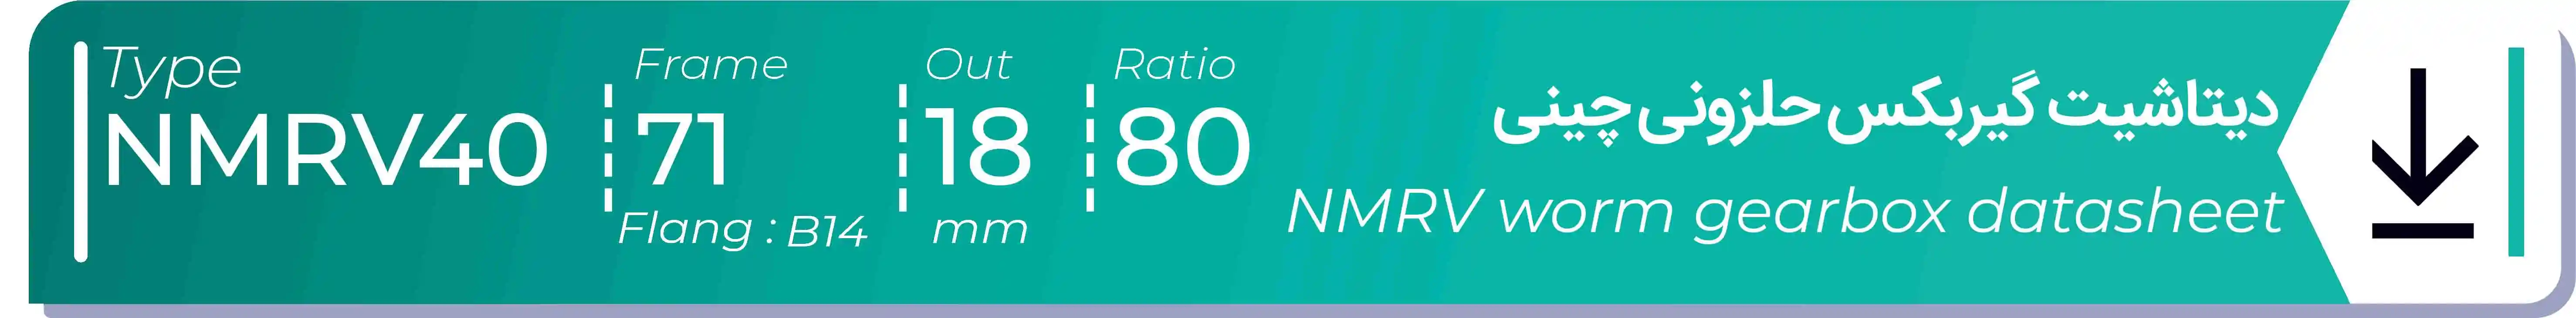  دیتاشیت و مشخصات فنی گیربکس حلزونی چینی   NMRV40  -  با خروجی 18- میلی متر و نسبت80 و فریم 71